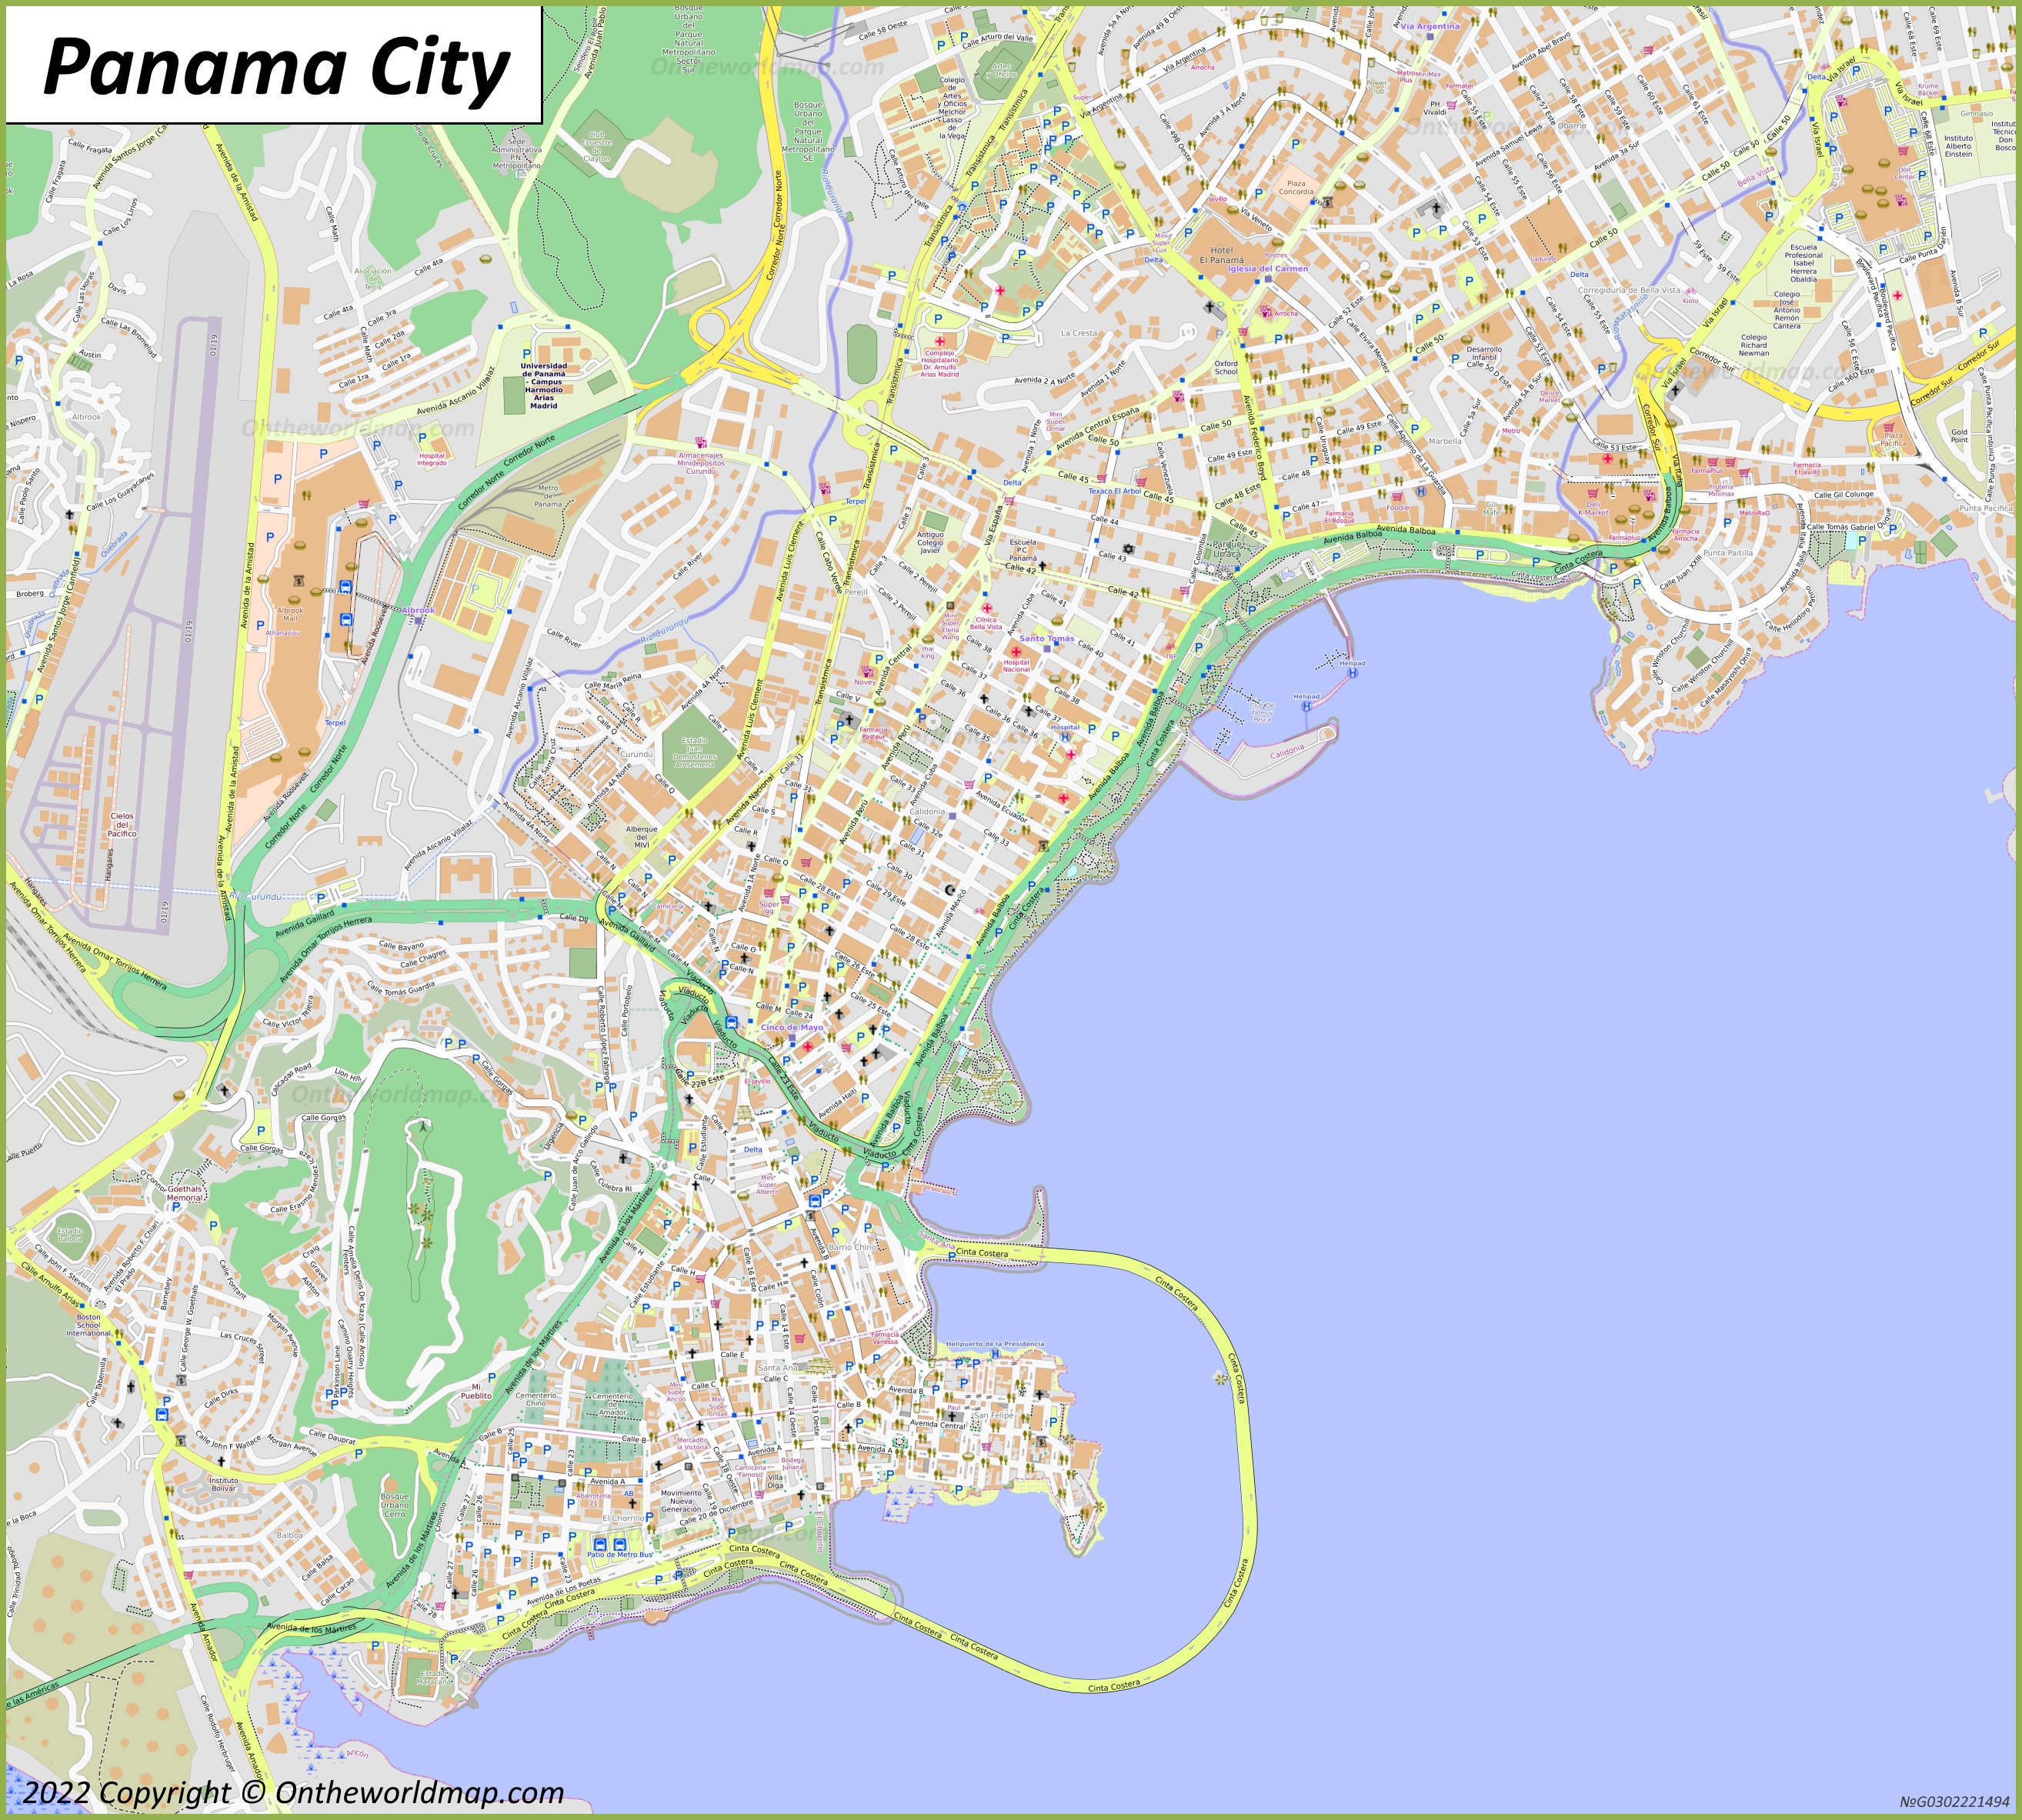 Ciudad de Panamá - Mapa del centro